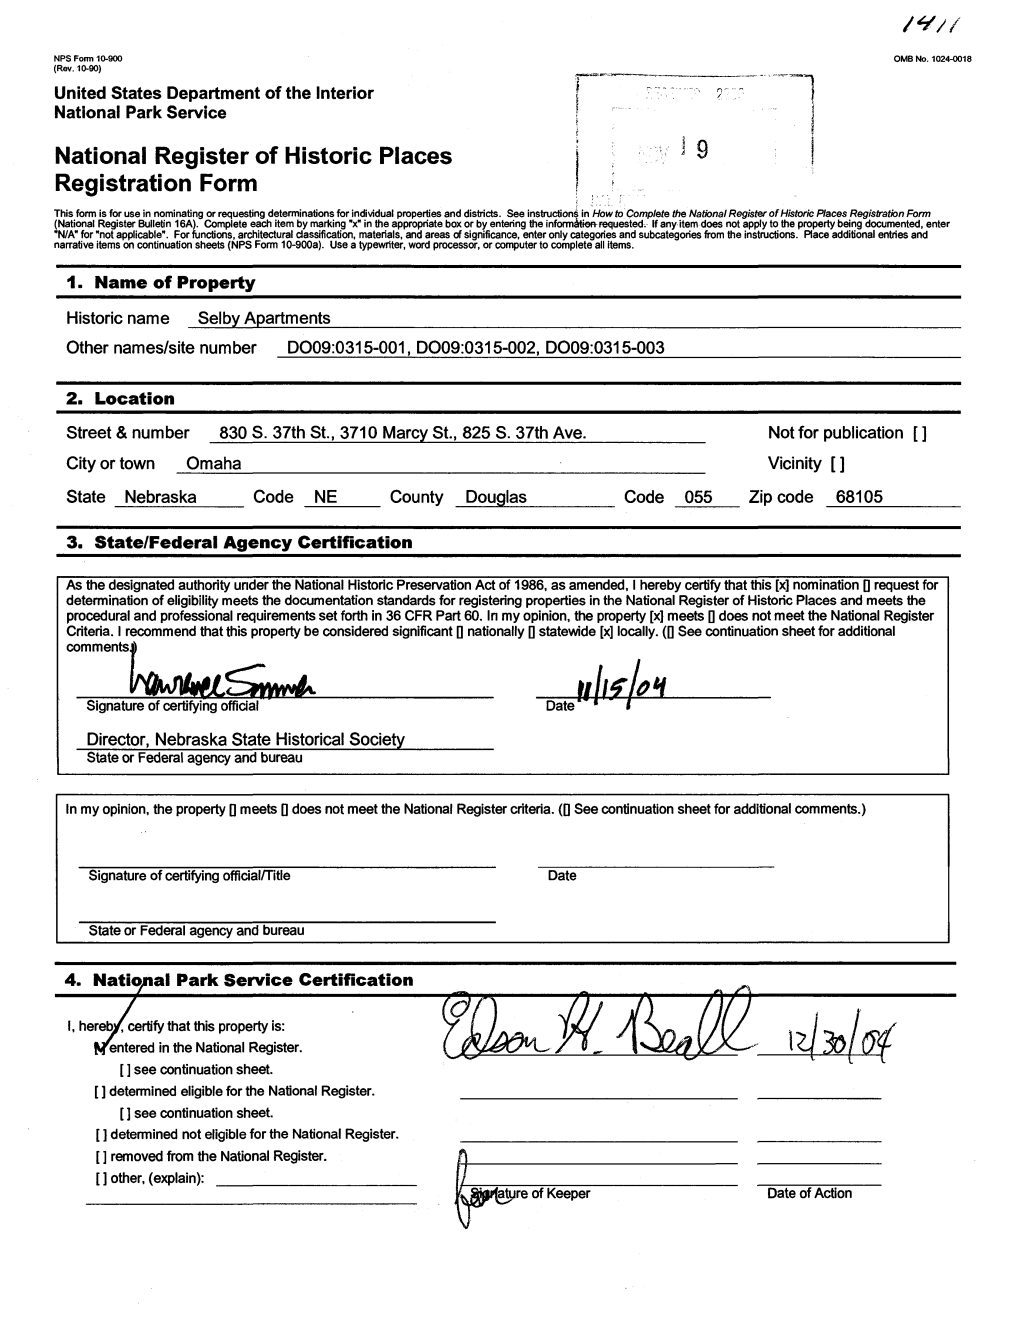 National Register of Historic Places Registration Form 9